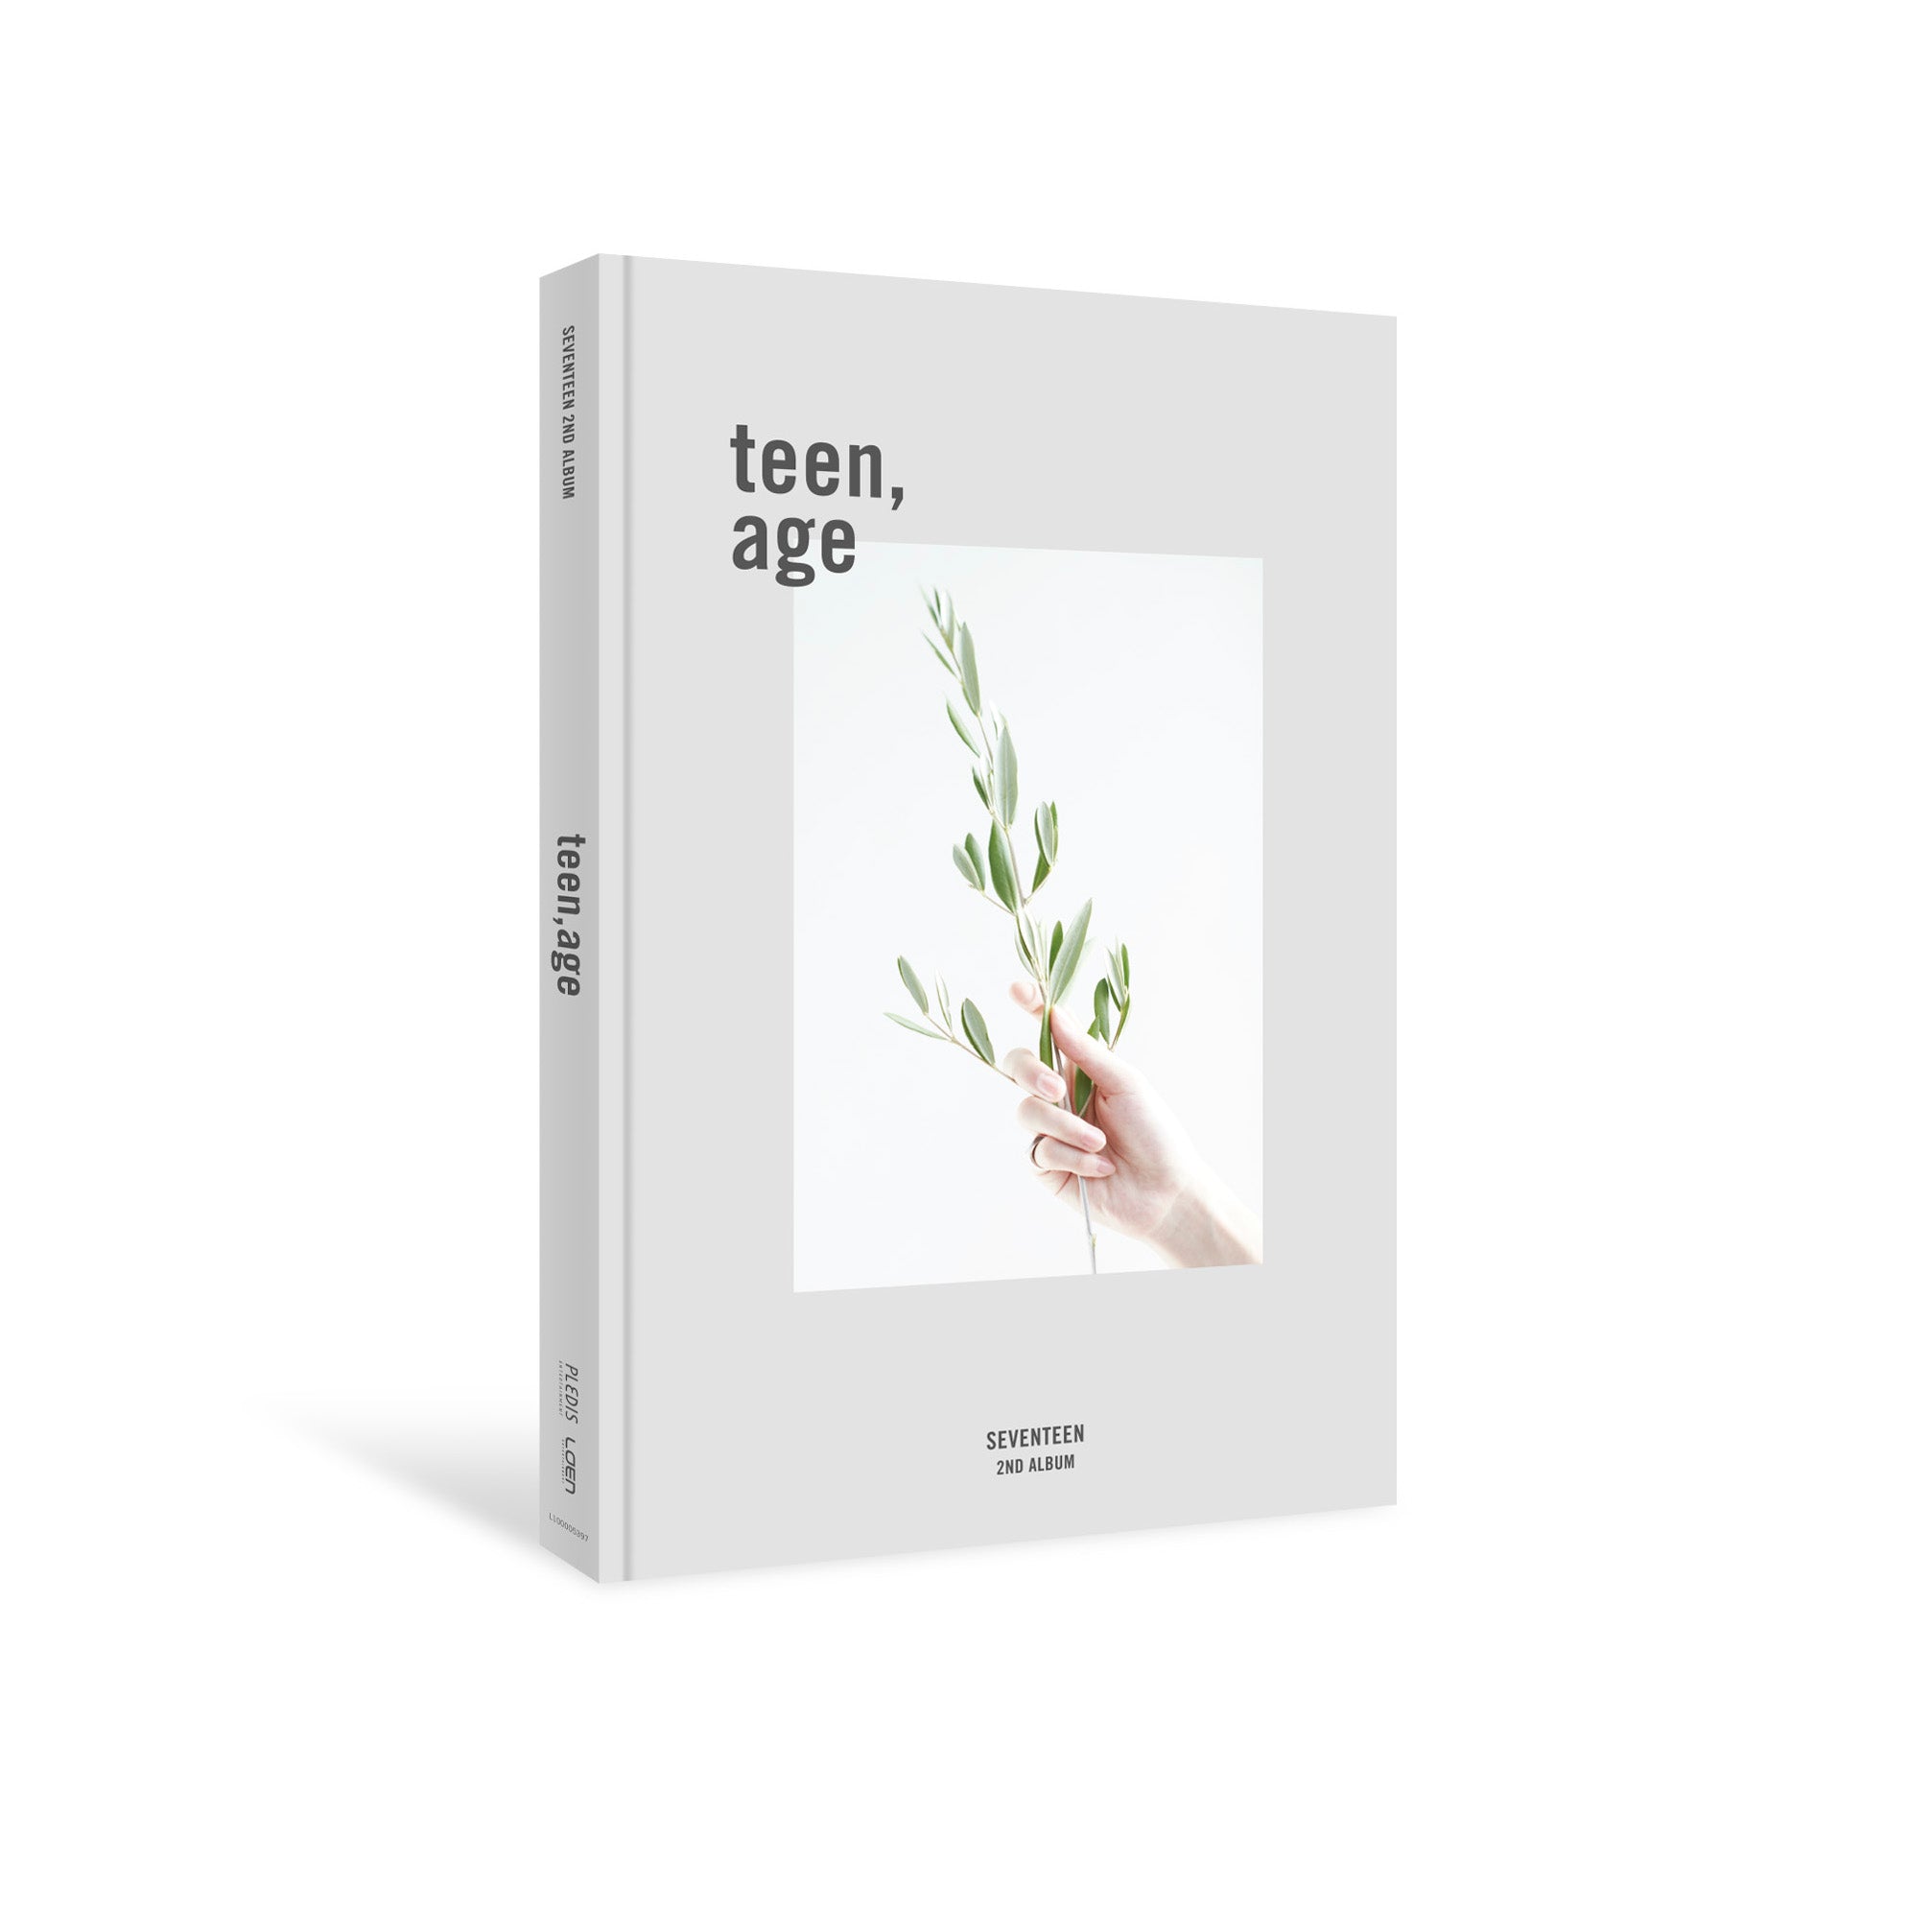 SEVENTEEN - 2nd Full Album TEEN, AGE